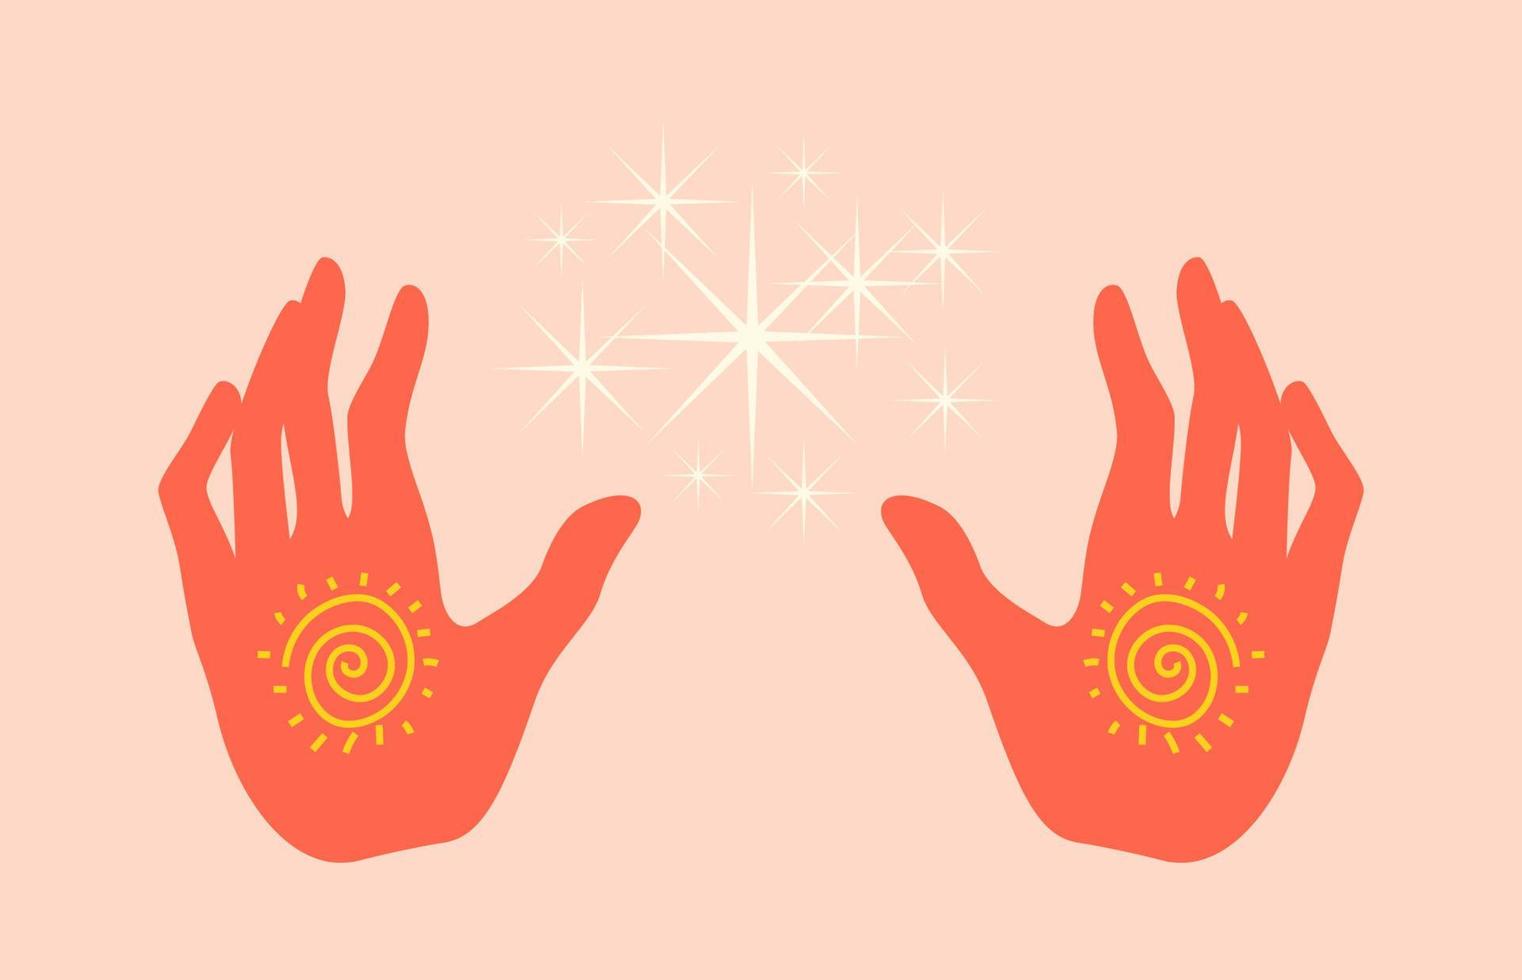 silhouette de mains de guérison isolée. mains colorées dessinées rayonnant d'énergie de guérison. illustration vectorielle de mains chaudes ouvertes dans un style plat. vecteur